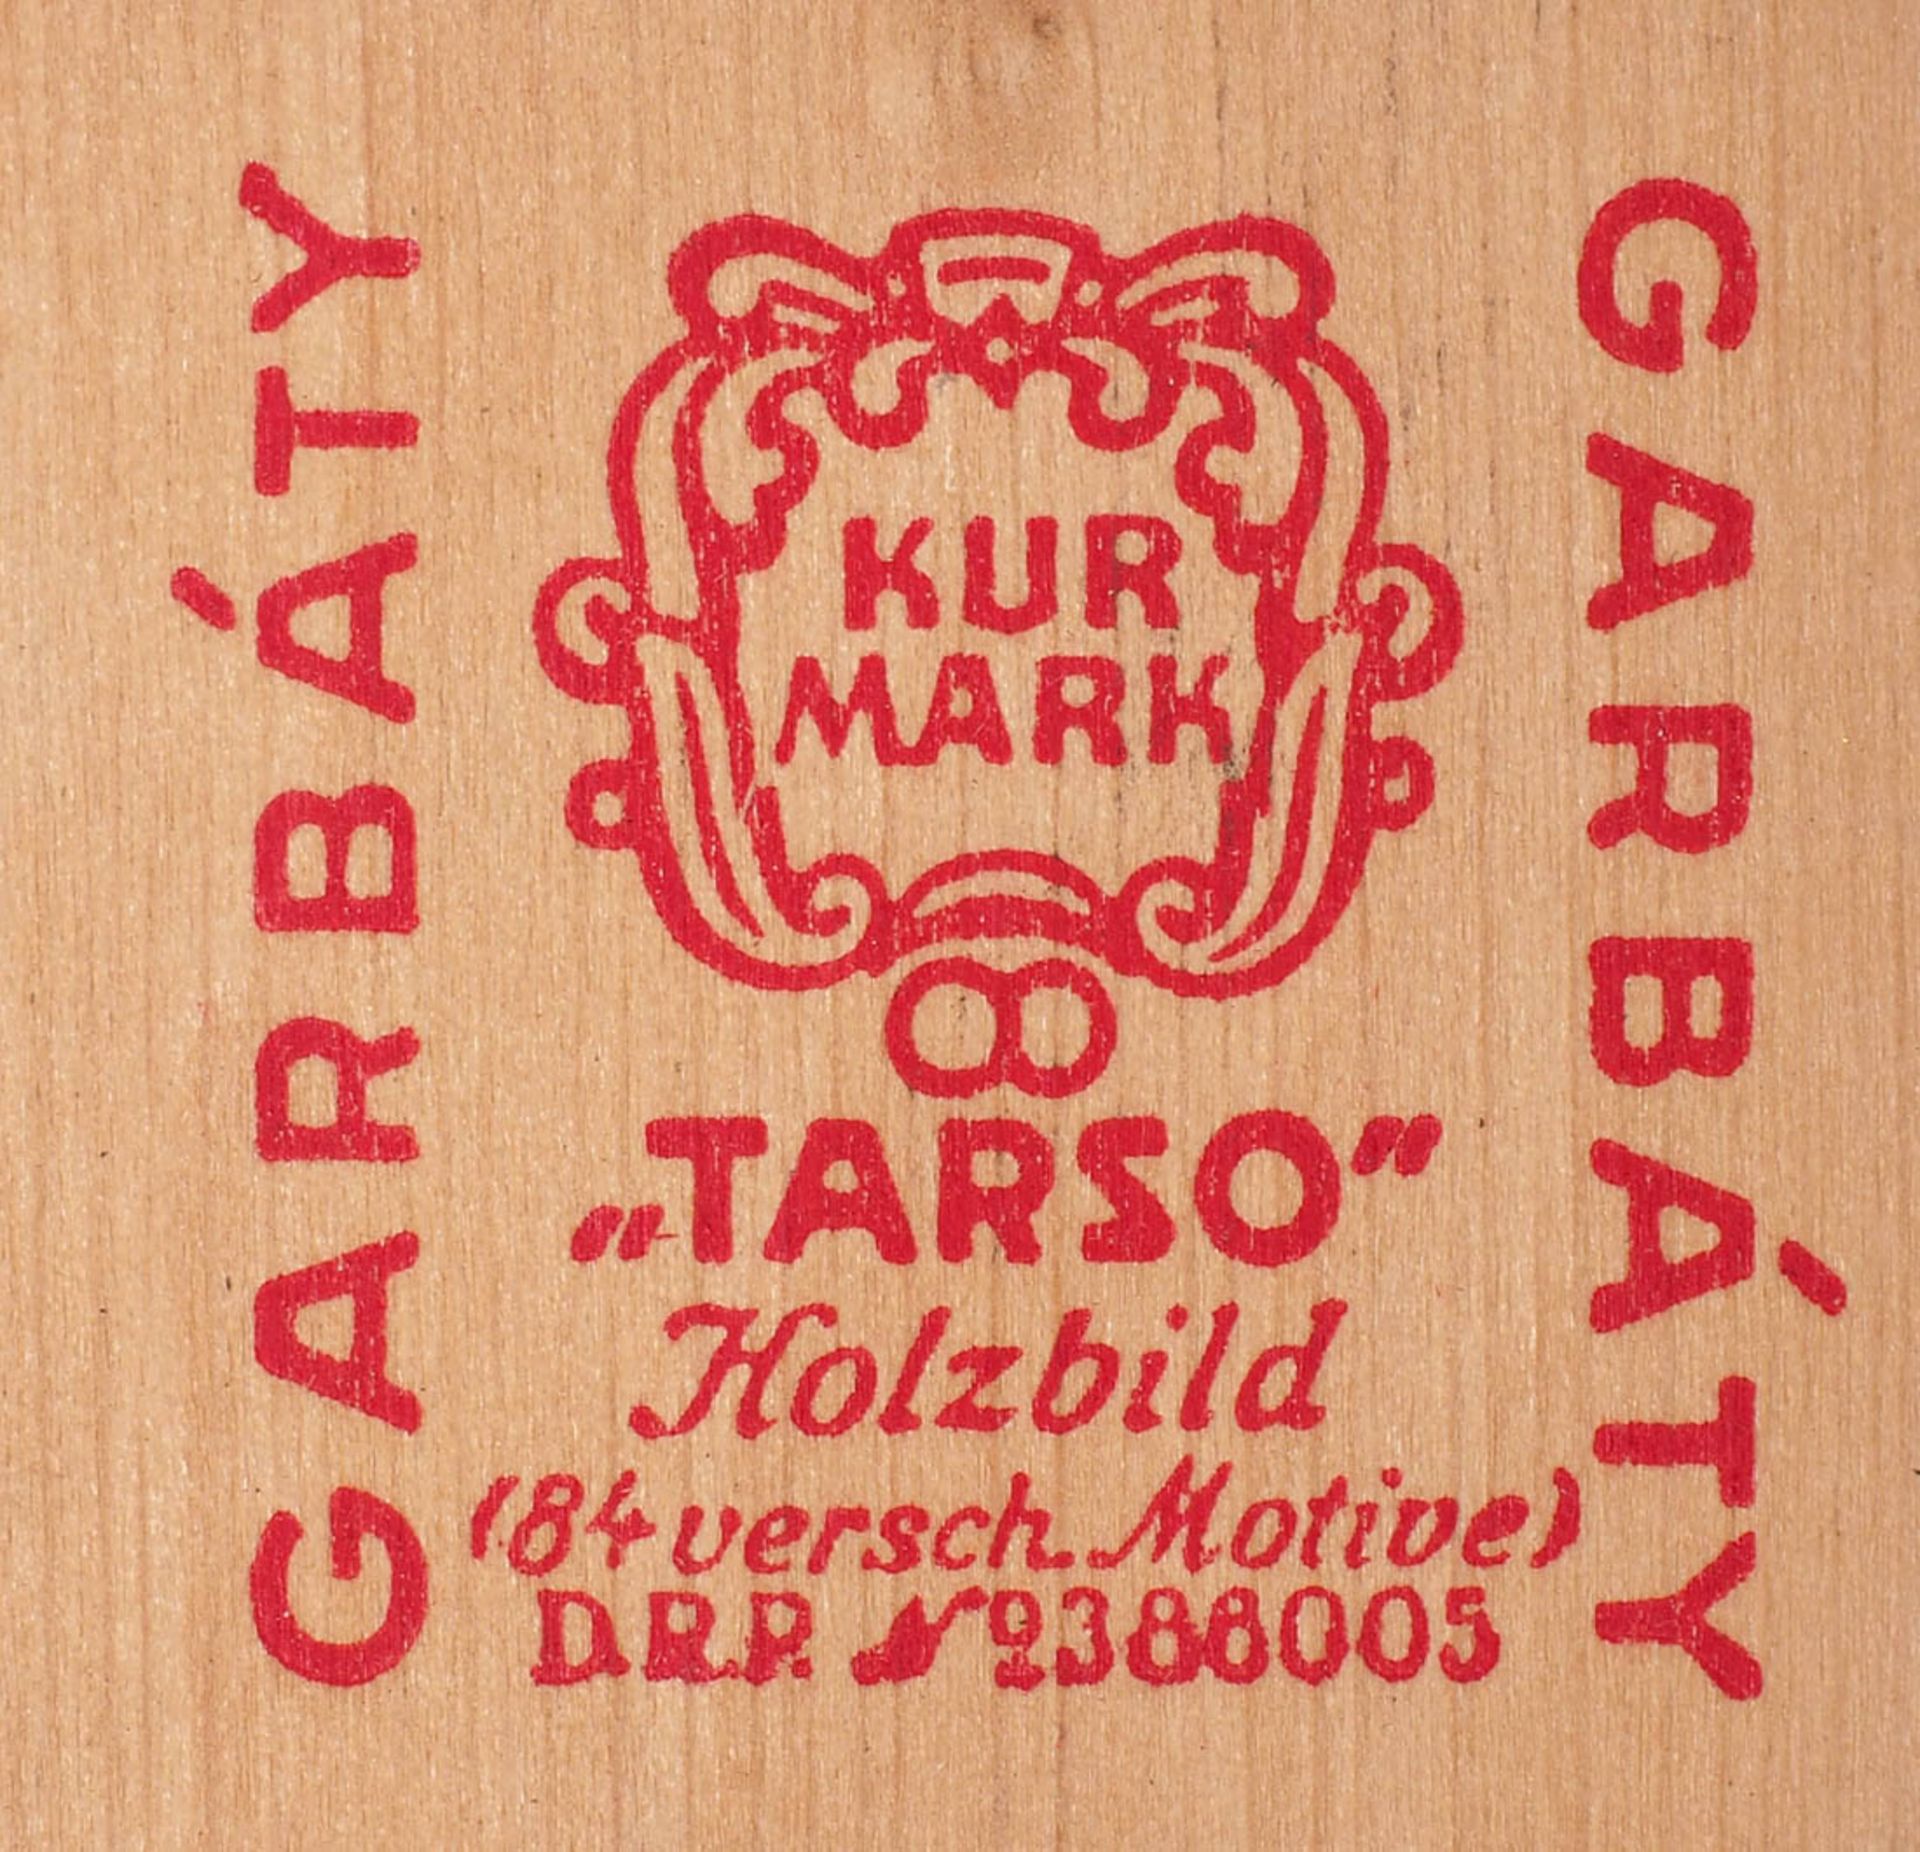 Konvolut Tarso-Holzbilder Garbati-Zigarettenfabrik, Berlin. Ca. 200 Stück. - Bild 4 aus 4